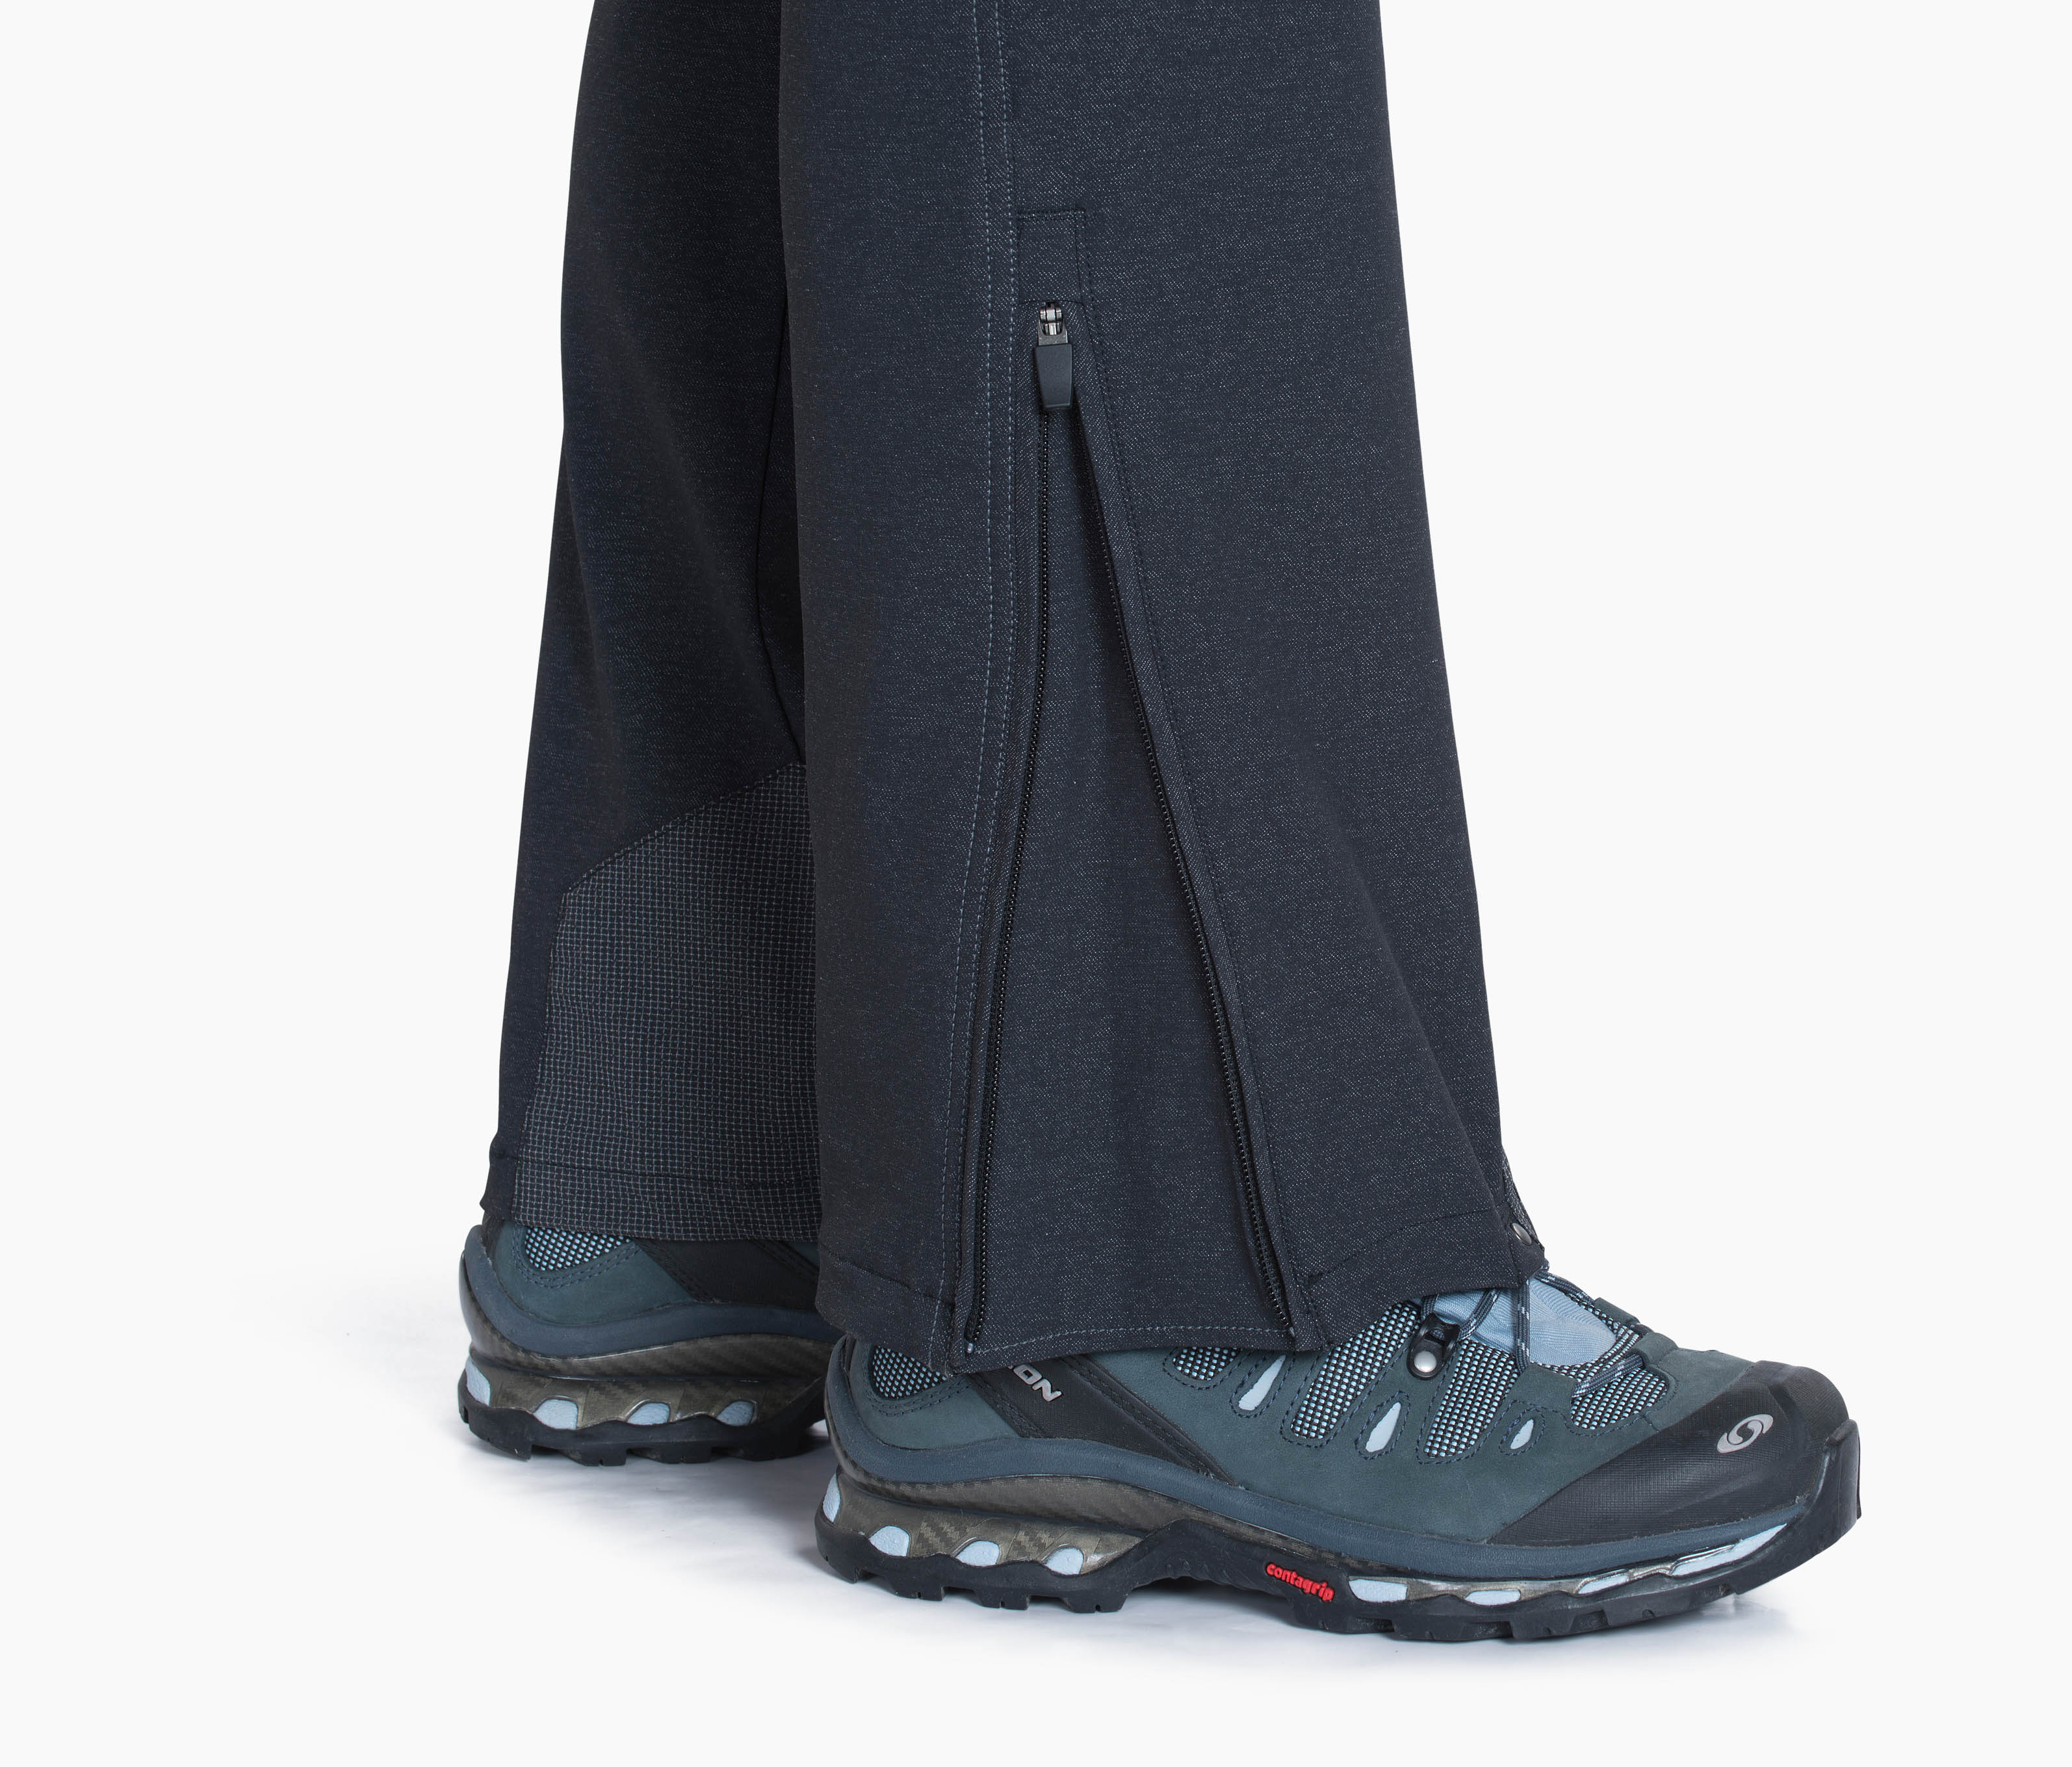 Kuhl, Pants & Jumpsuits, Kuhl Womens Durango Pant Cinch Up Convertible  Hiking Pant Gray Size 2